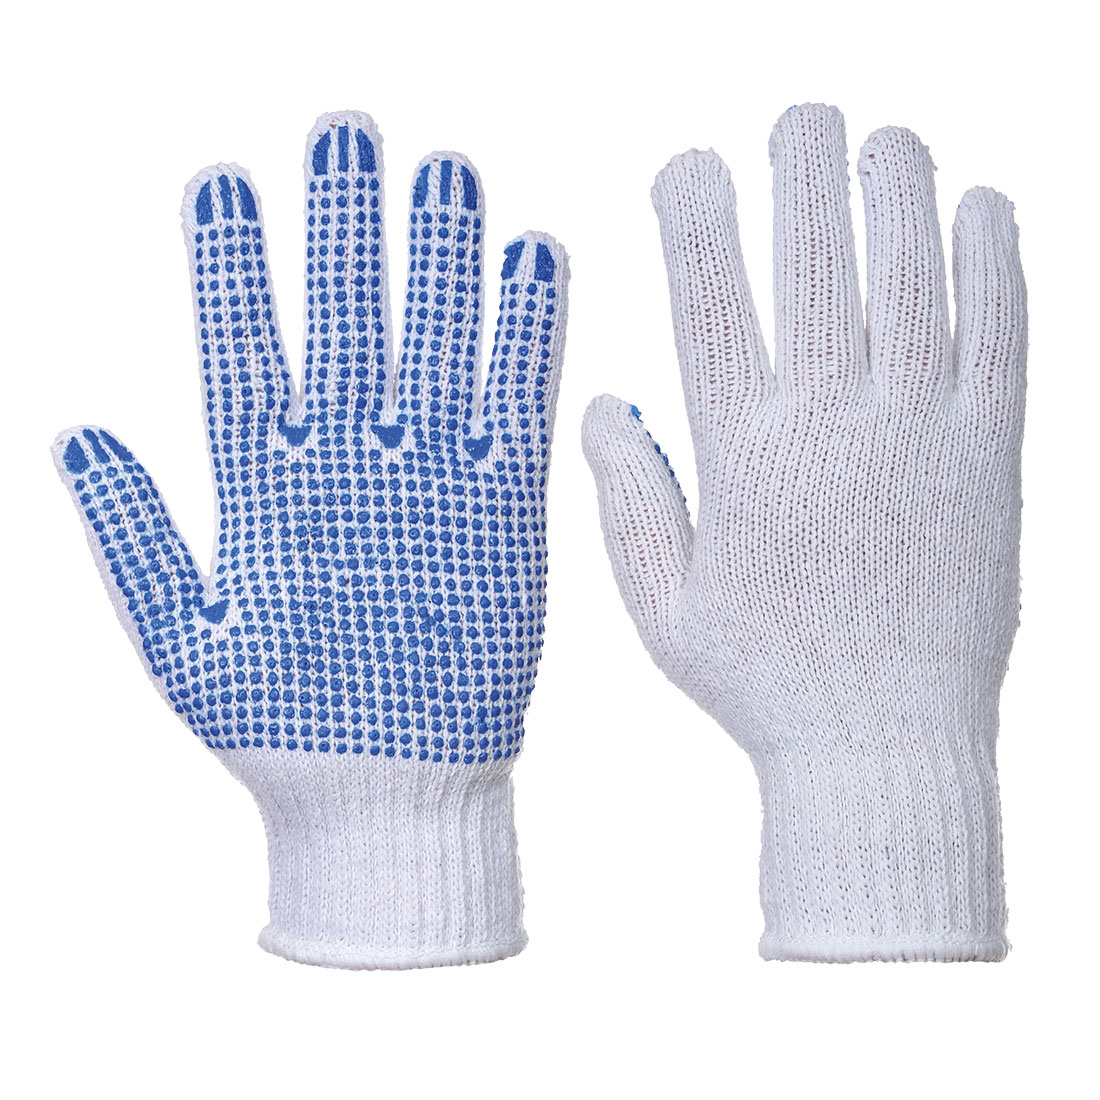 Classic Polka Dot Glove White/blue Size L - 12 Pack